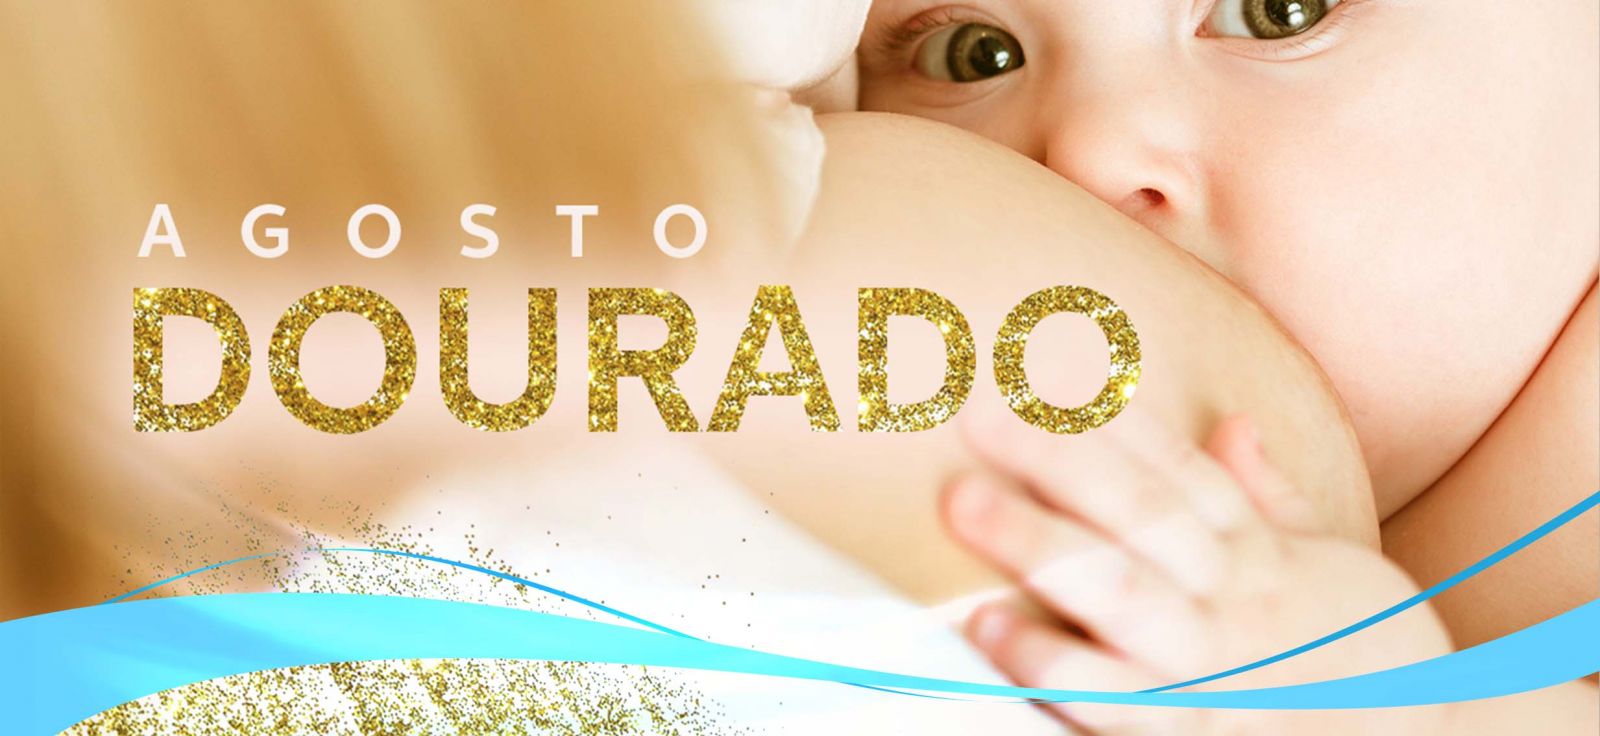 AGOSTO DOURADO - Mês símbolo da luta de muitos pelo incentivo à amamentação e o dourado, confirmando o seu padrão ouro de qualidade.